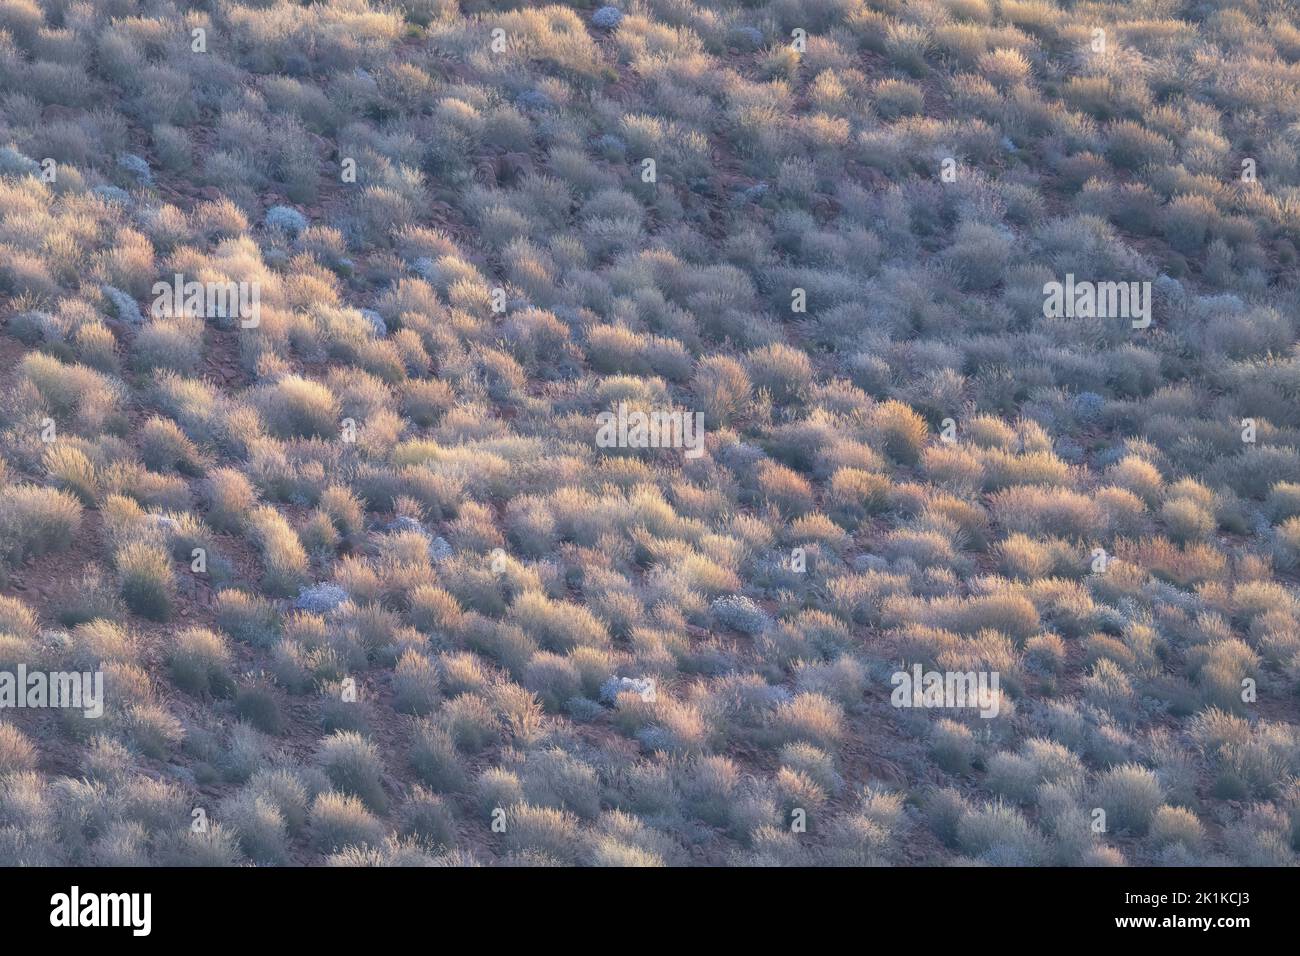 Veduta aerea della collina rocciosa ricoperta di spinifex in paesaggio rurale, Australia Foto Stock